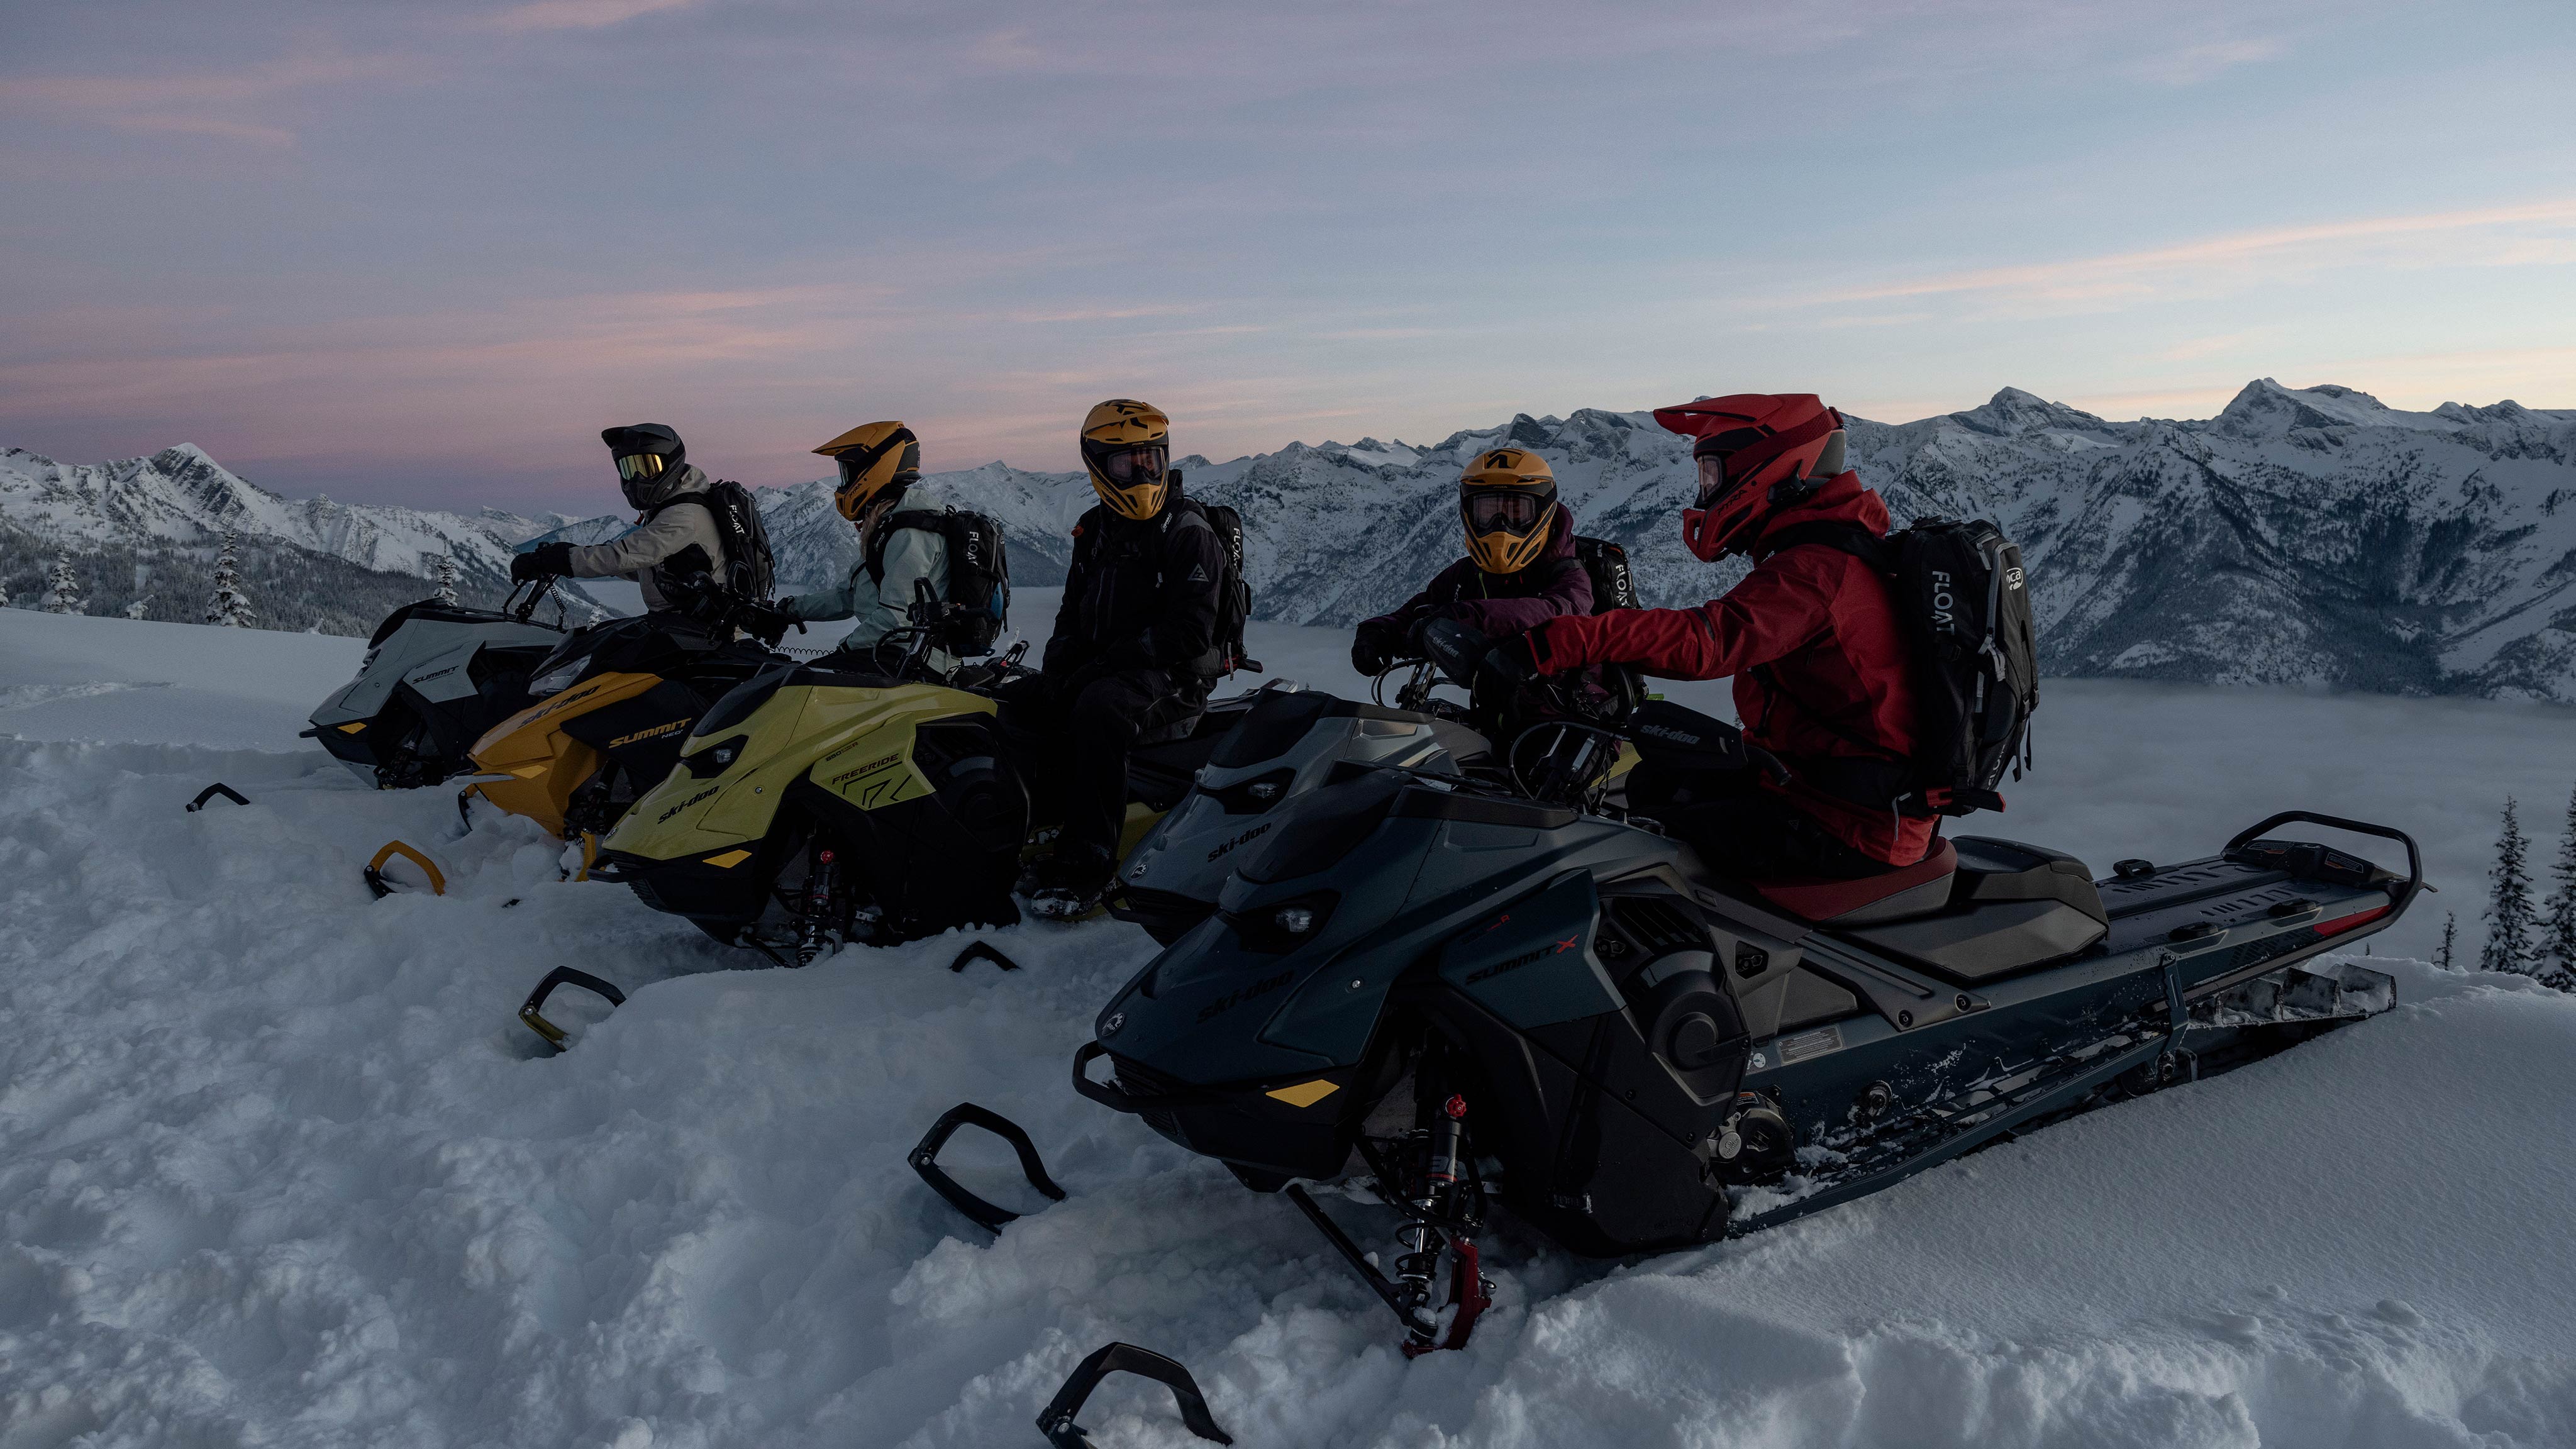 Cinq motoneigistes sur le haut d'une montagne enneigée